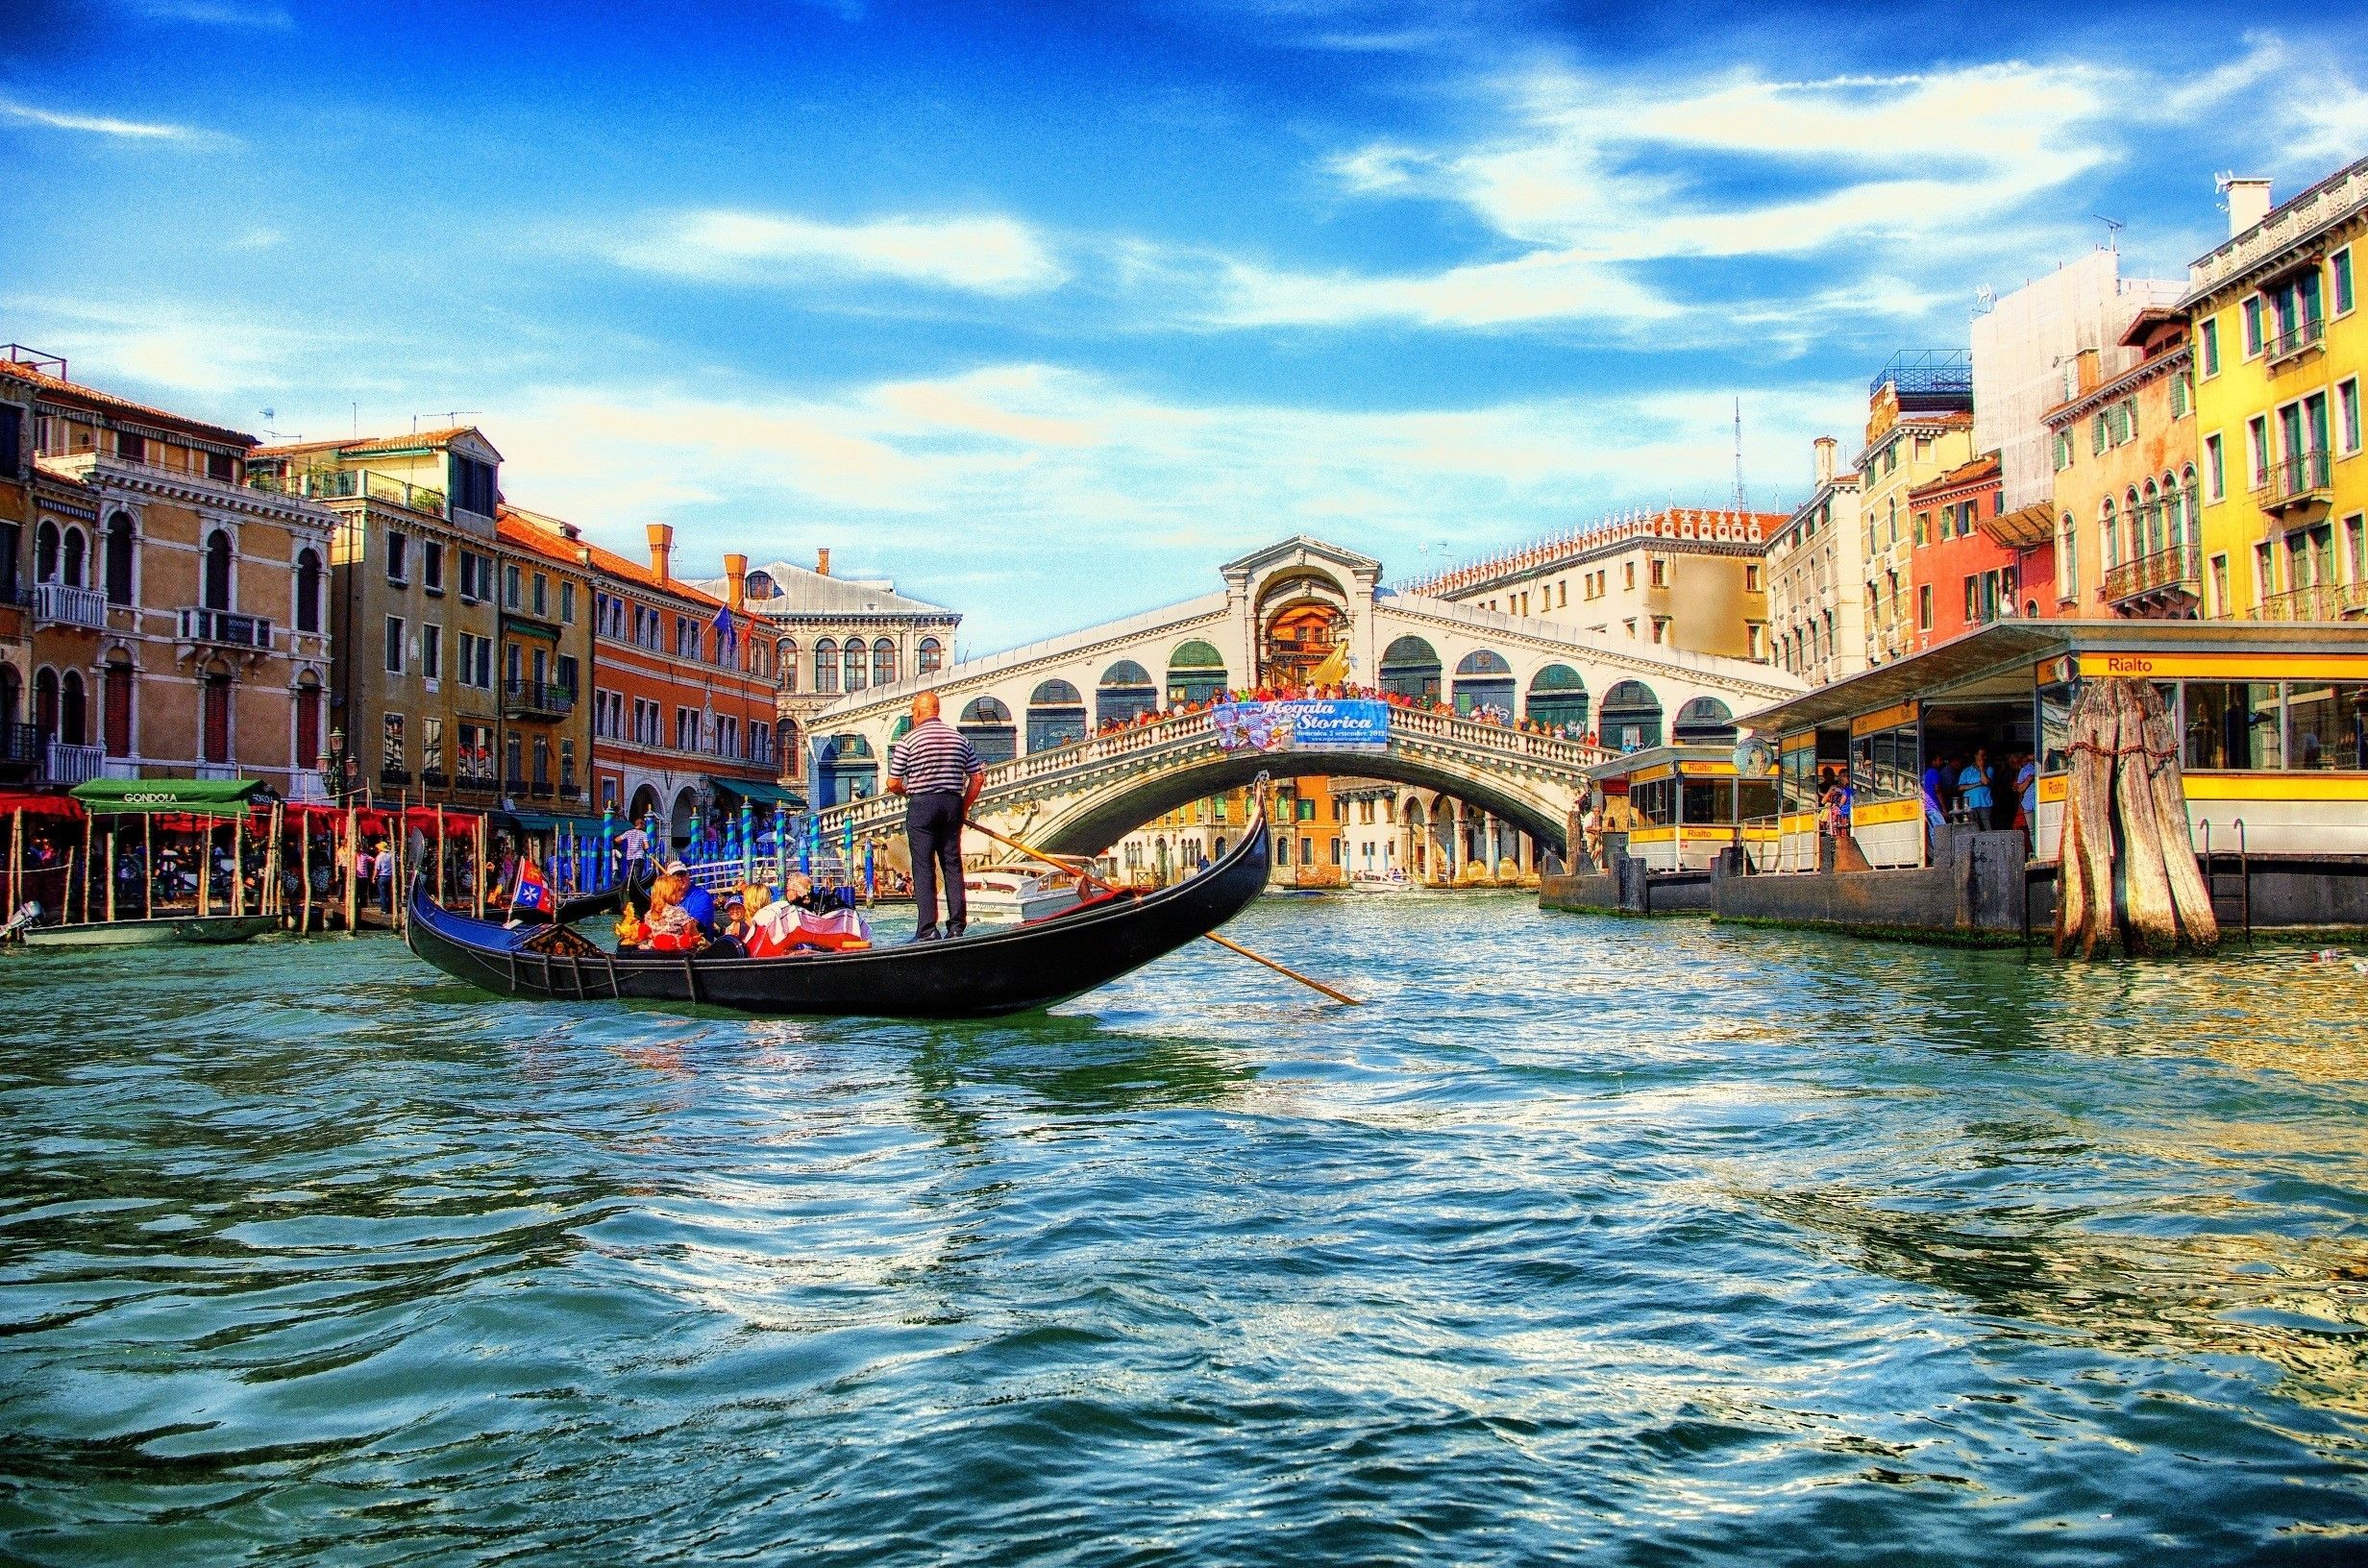 Rialto Beautiful Arch Bridge in Venice City Italy Wallpaper. HD